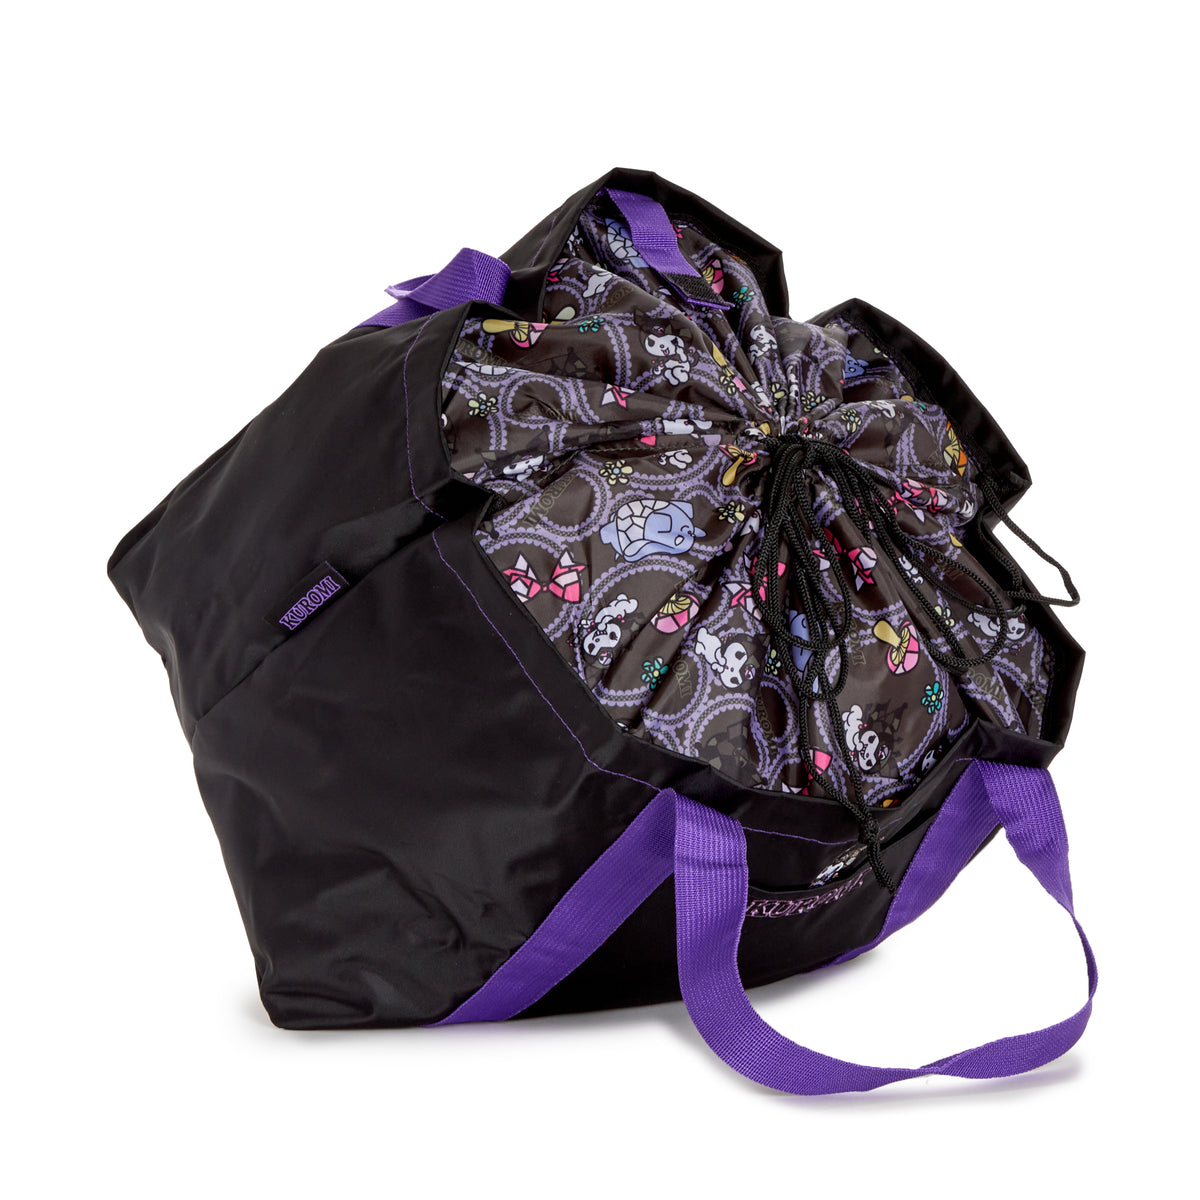 Kuromi Foldable Oversized Tote Bag Bags Global Original   